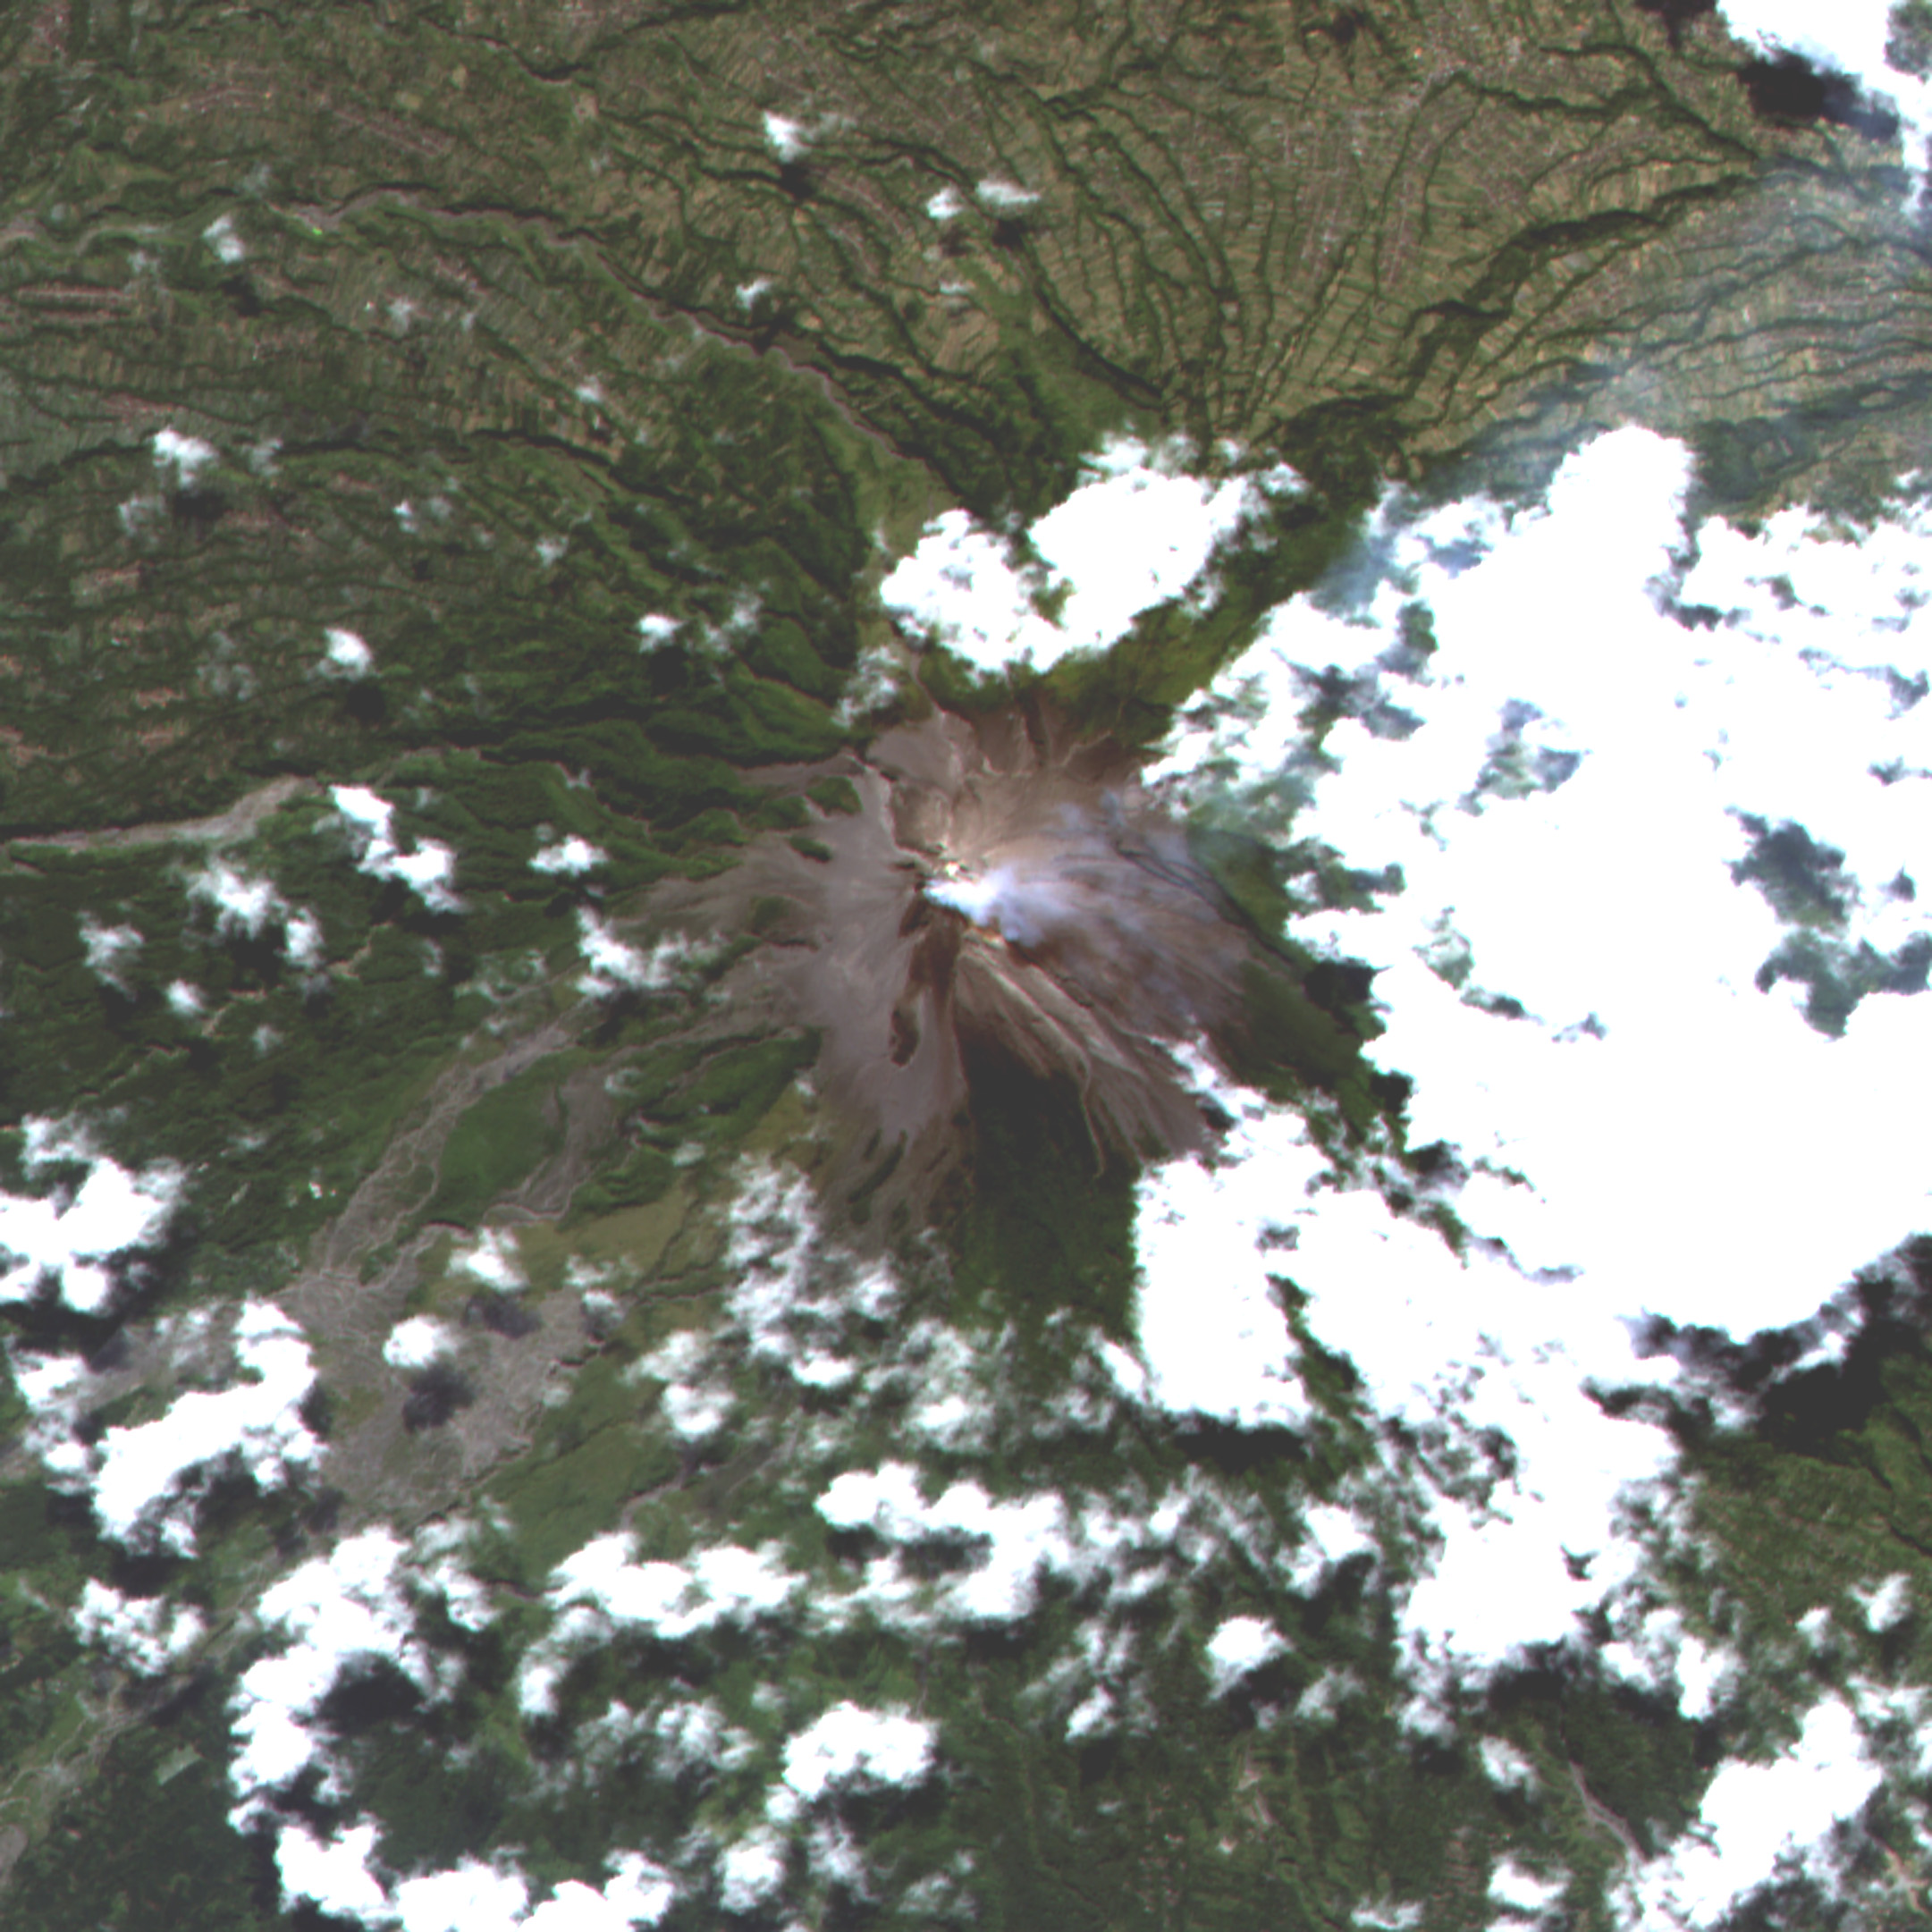 Mt. Merapi observed by AVNIR-2